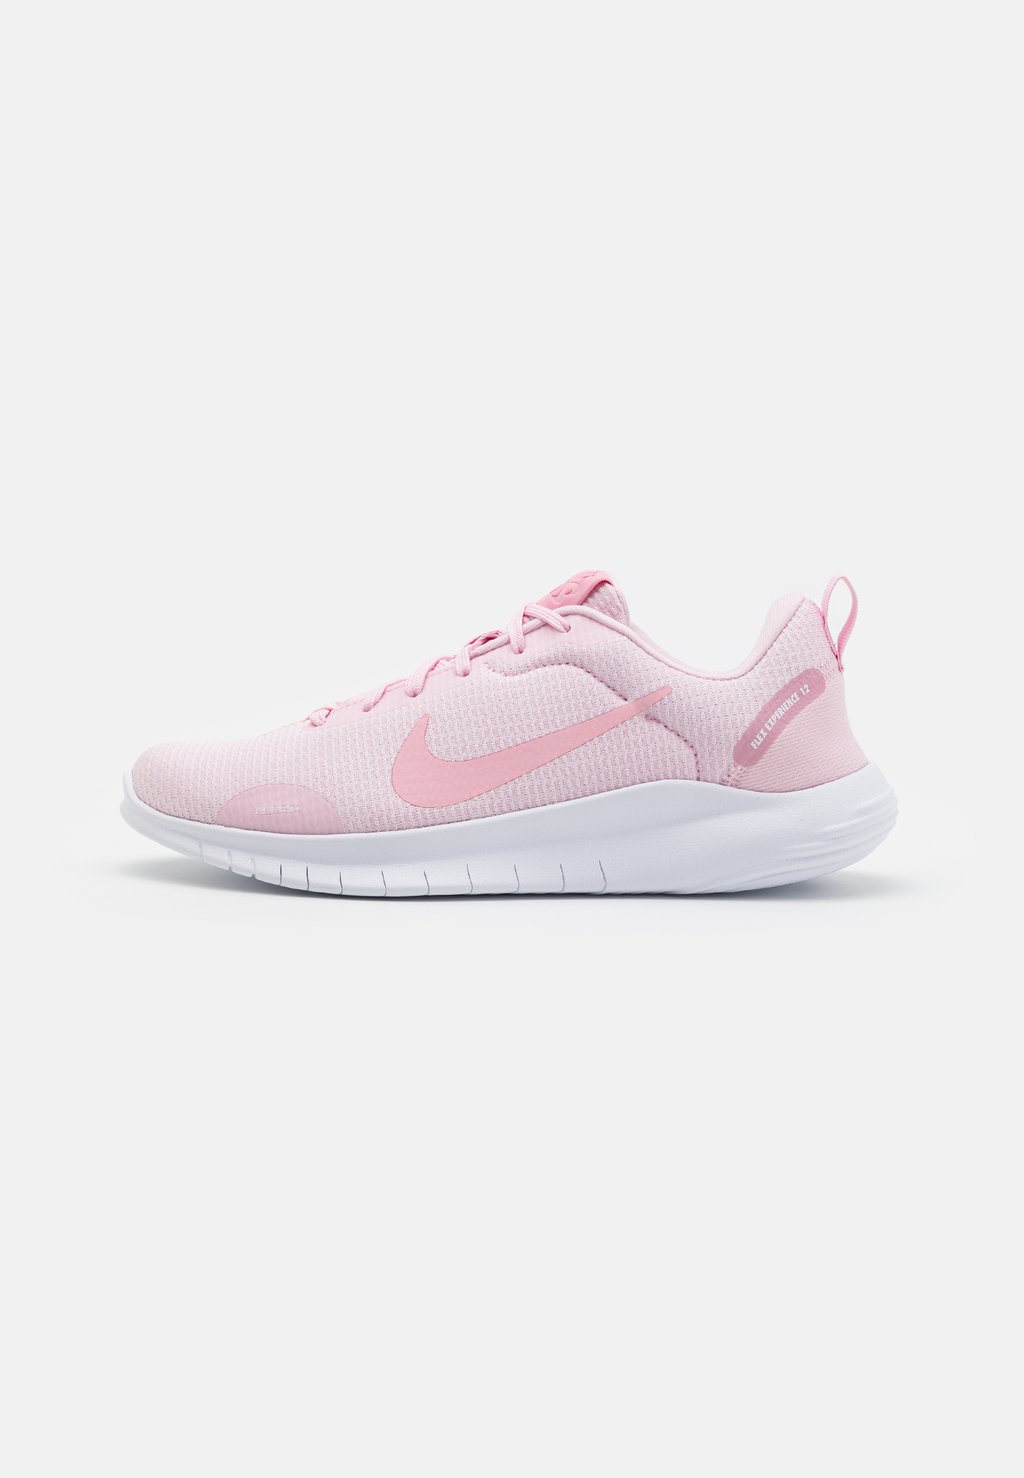 Нейтральные кроссовки FLEX EXPERIENCE RN 12 Nike, цвет pink foam/white/pearl pink/med soft pink